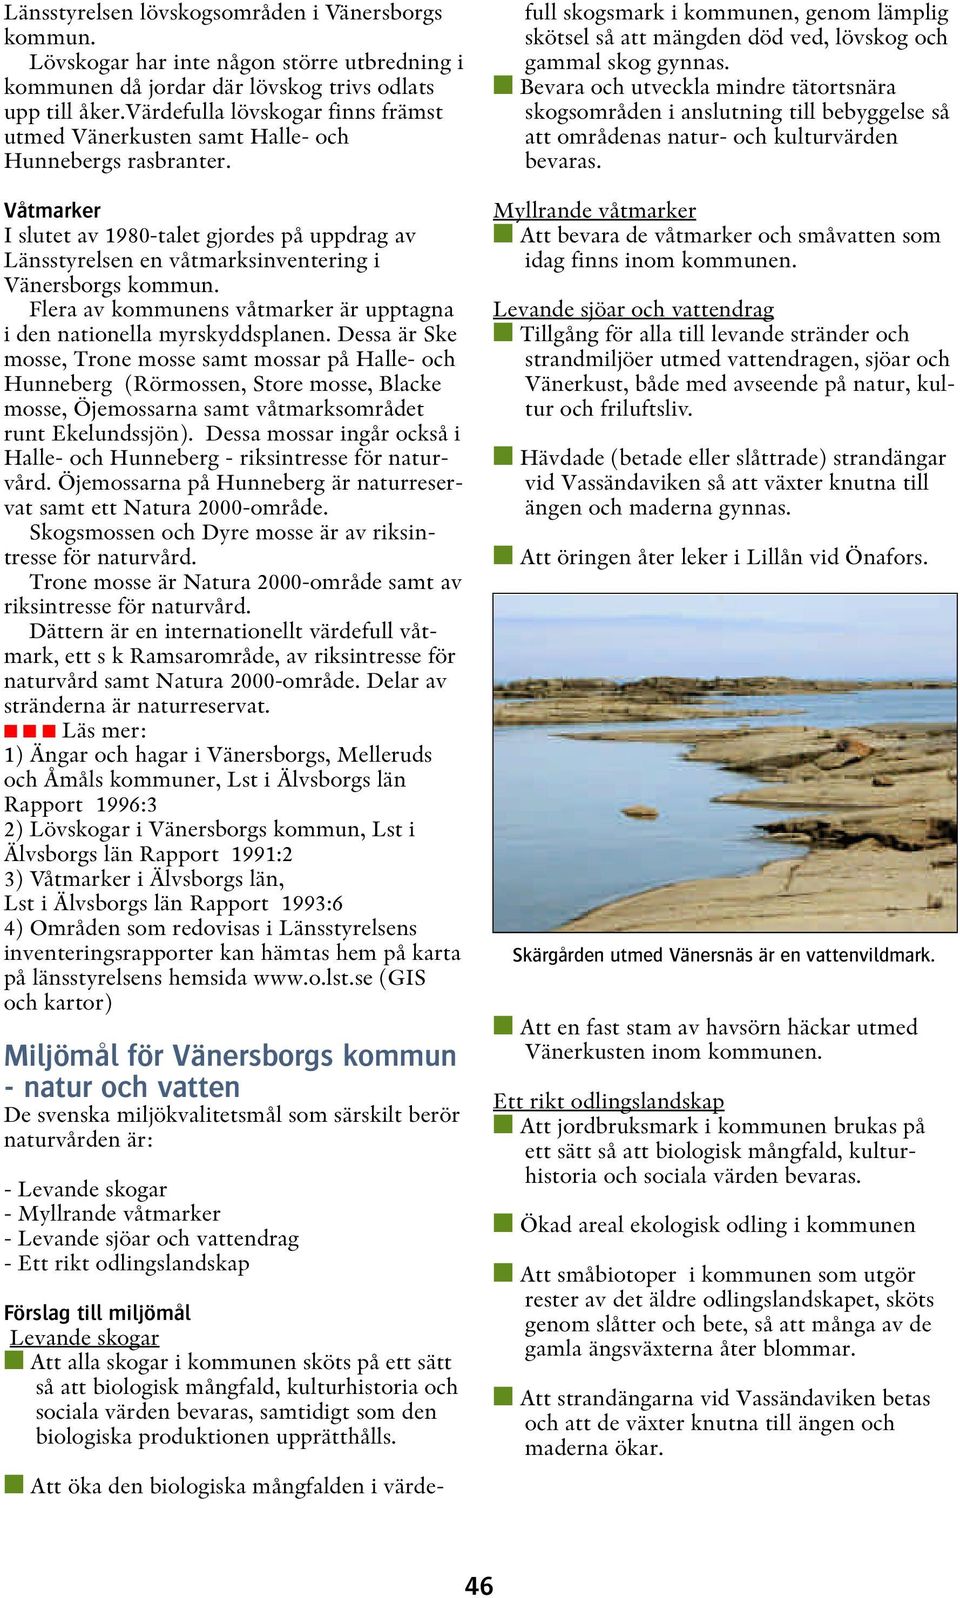 Våtmarker I slutet av 1980-talet gjordes på uppdrag av Länsstyrelsen en våtmarksinventering i Vänersborgs kommun. Flera av kommunens våtmarker är upptagna i den nationella myrskyddsplanen.